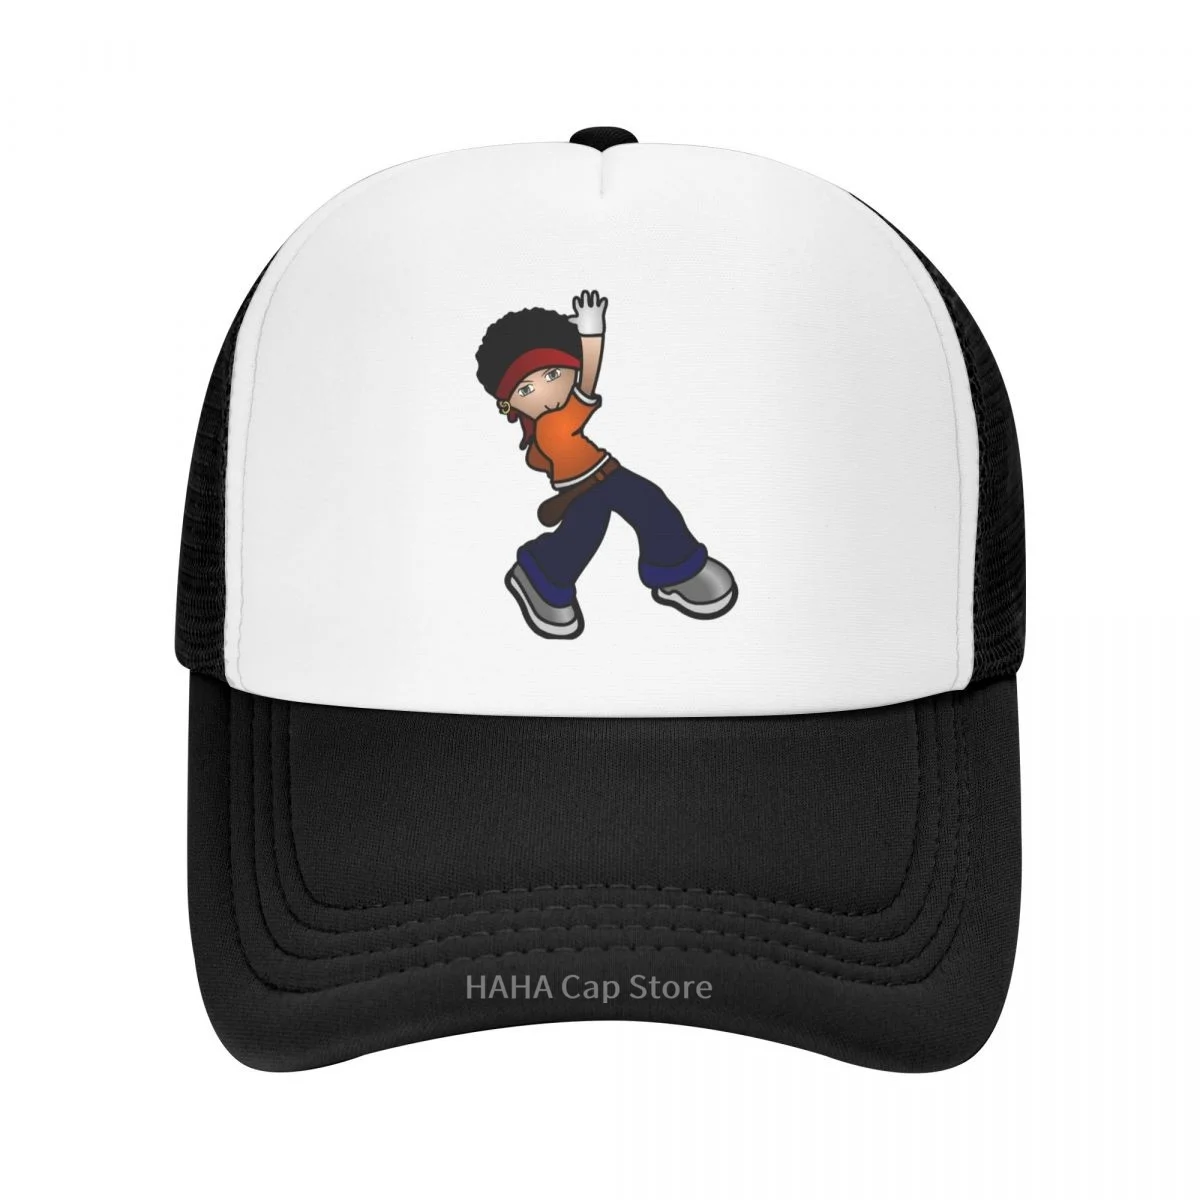 

Детская шапка для танцев в стиле хип-хоп, бейсболка, сетчатая шапка, шапка из полиэстера, модная шапка для взрослых, шляпа разных стилей